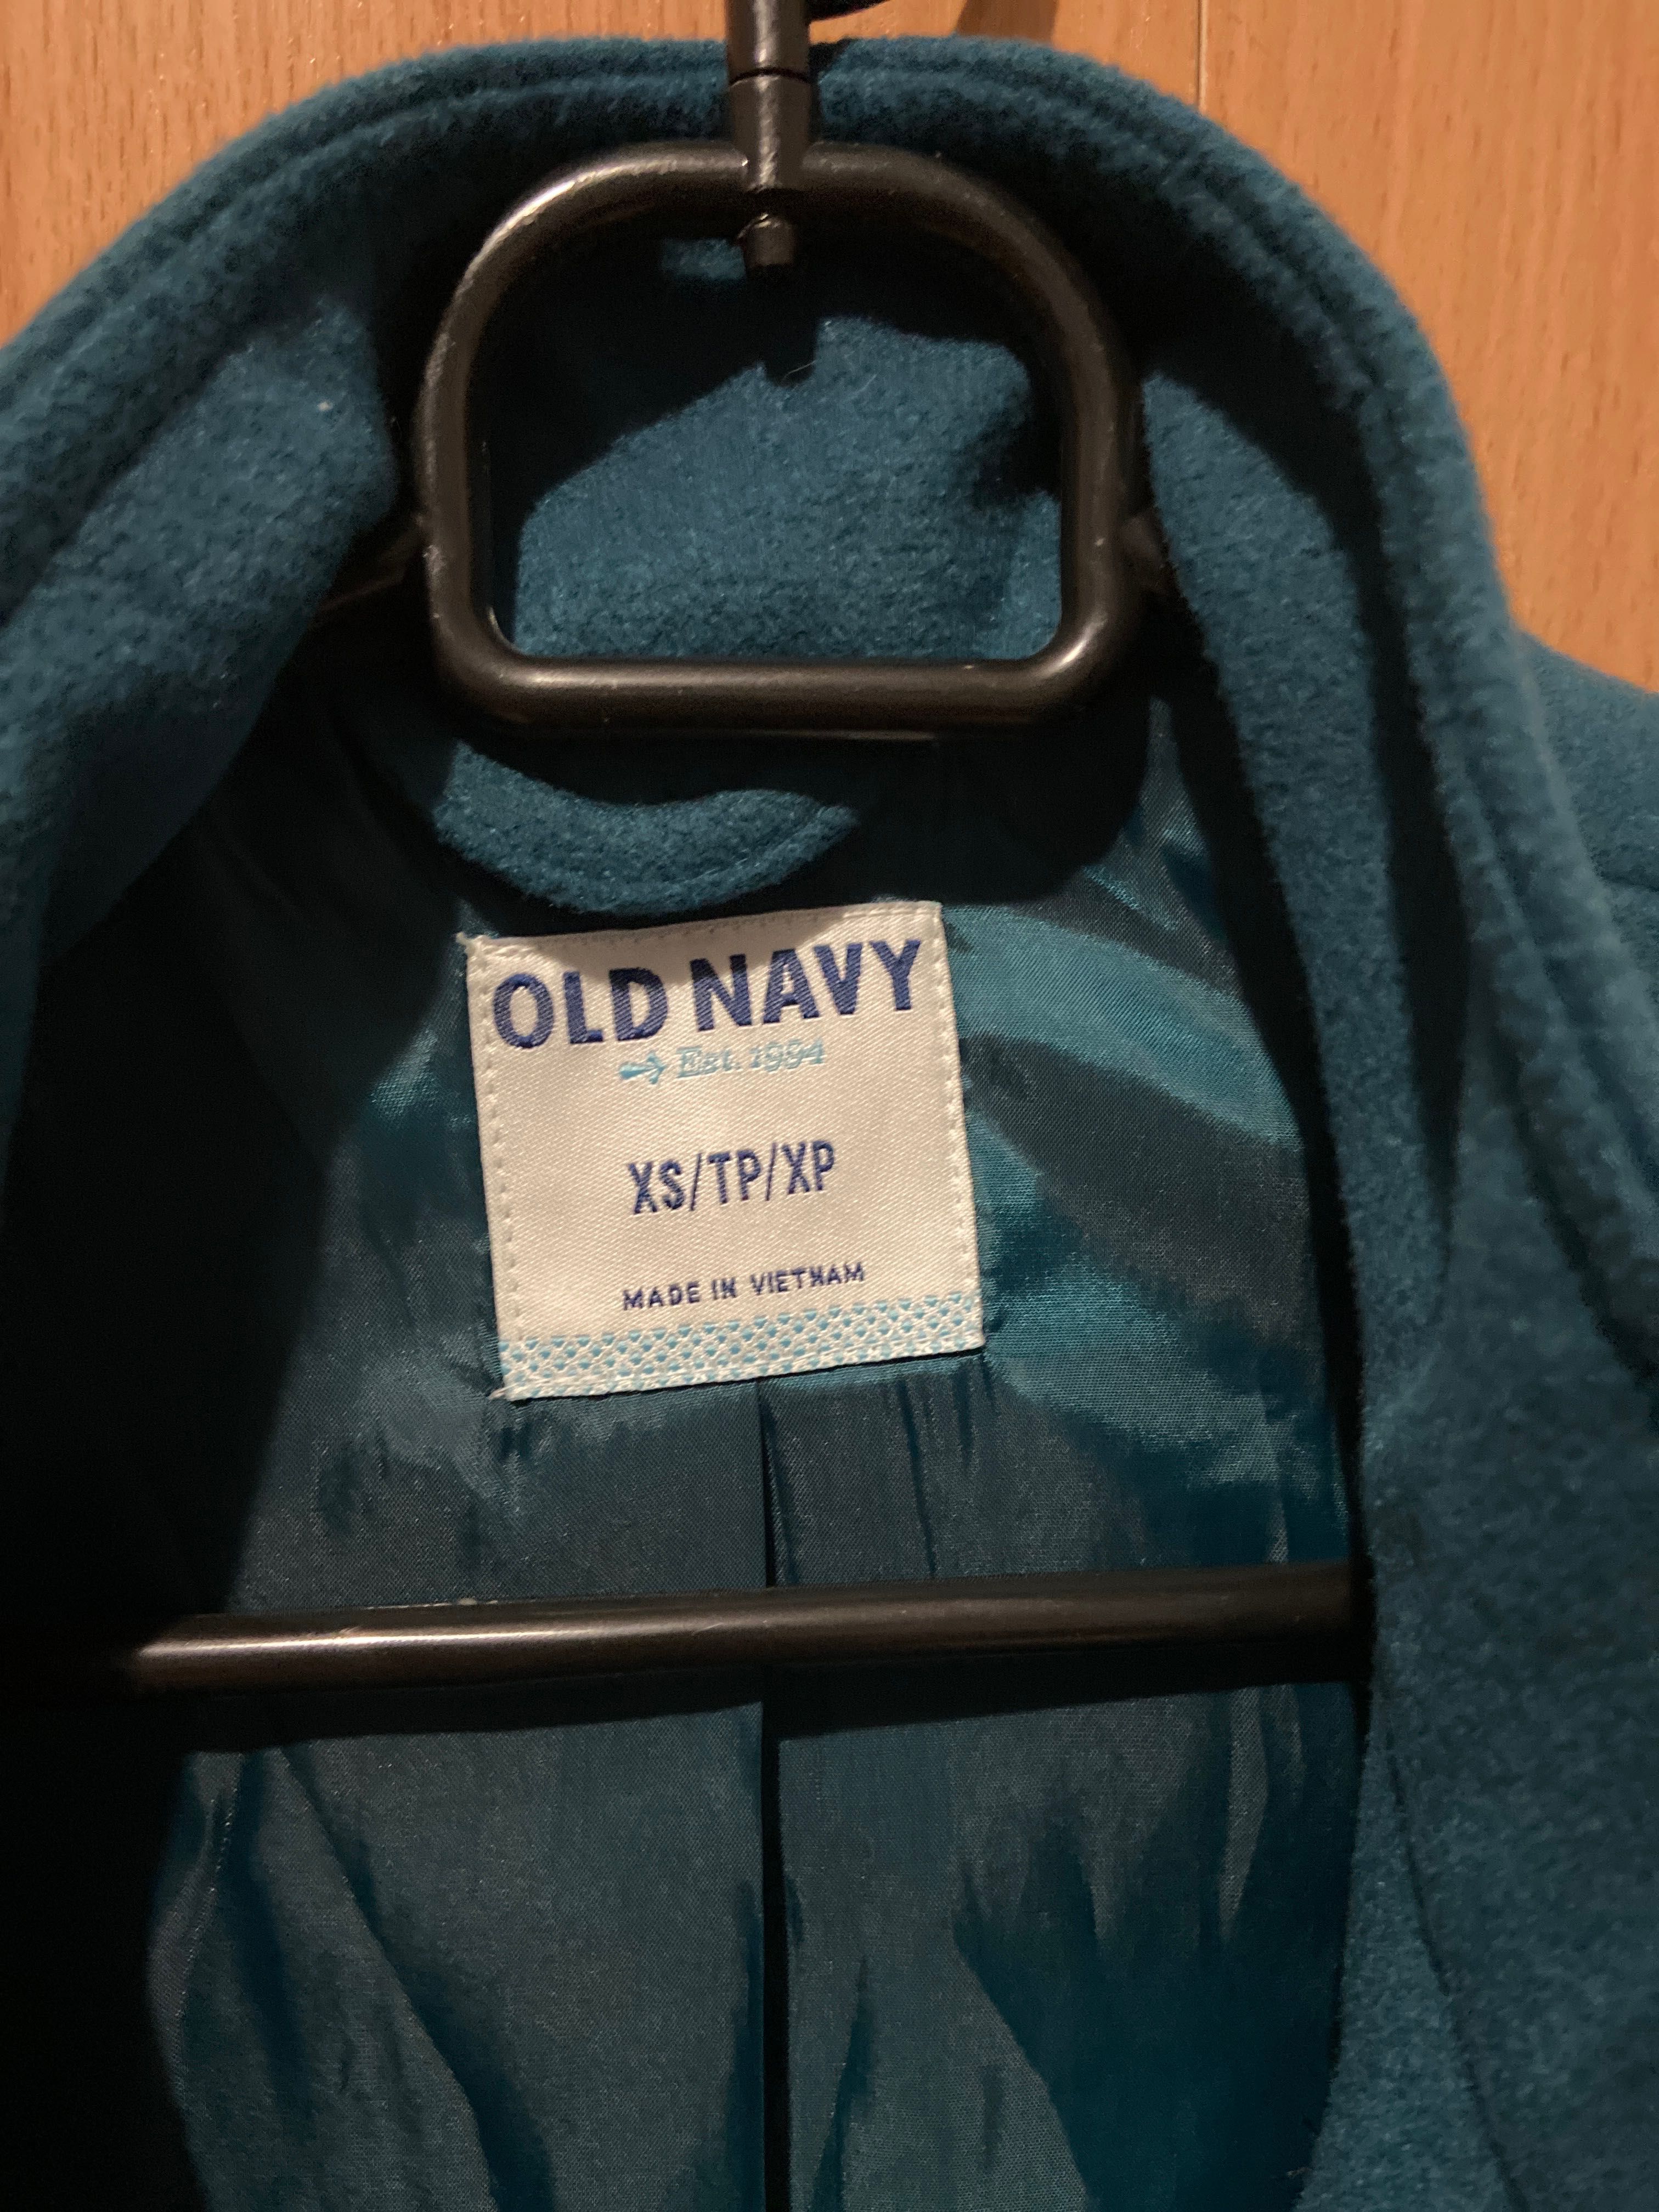 Късо синьо-зелено палто OLDNAVY, XS